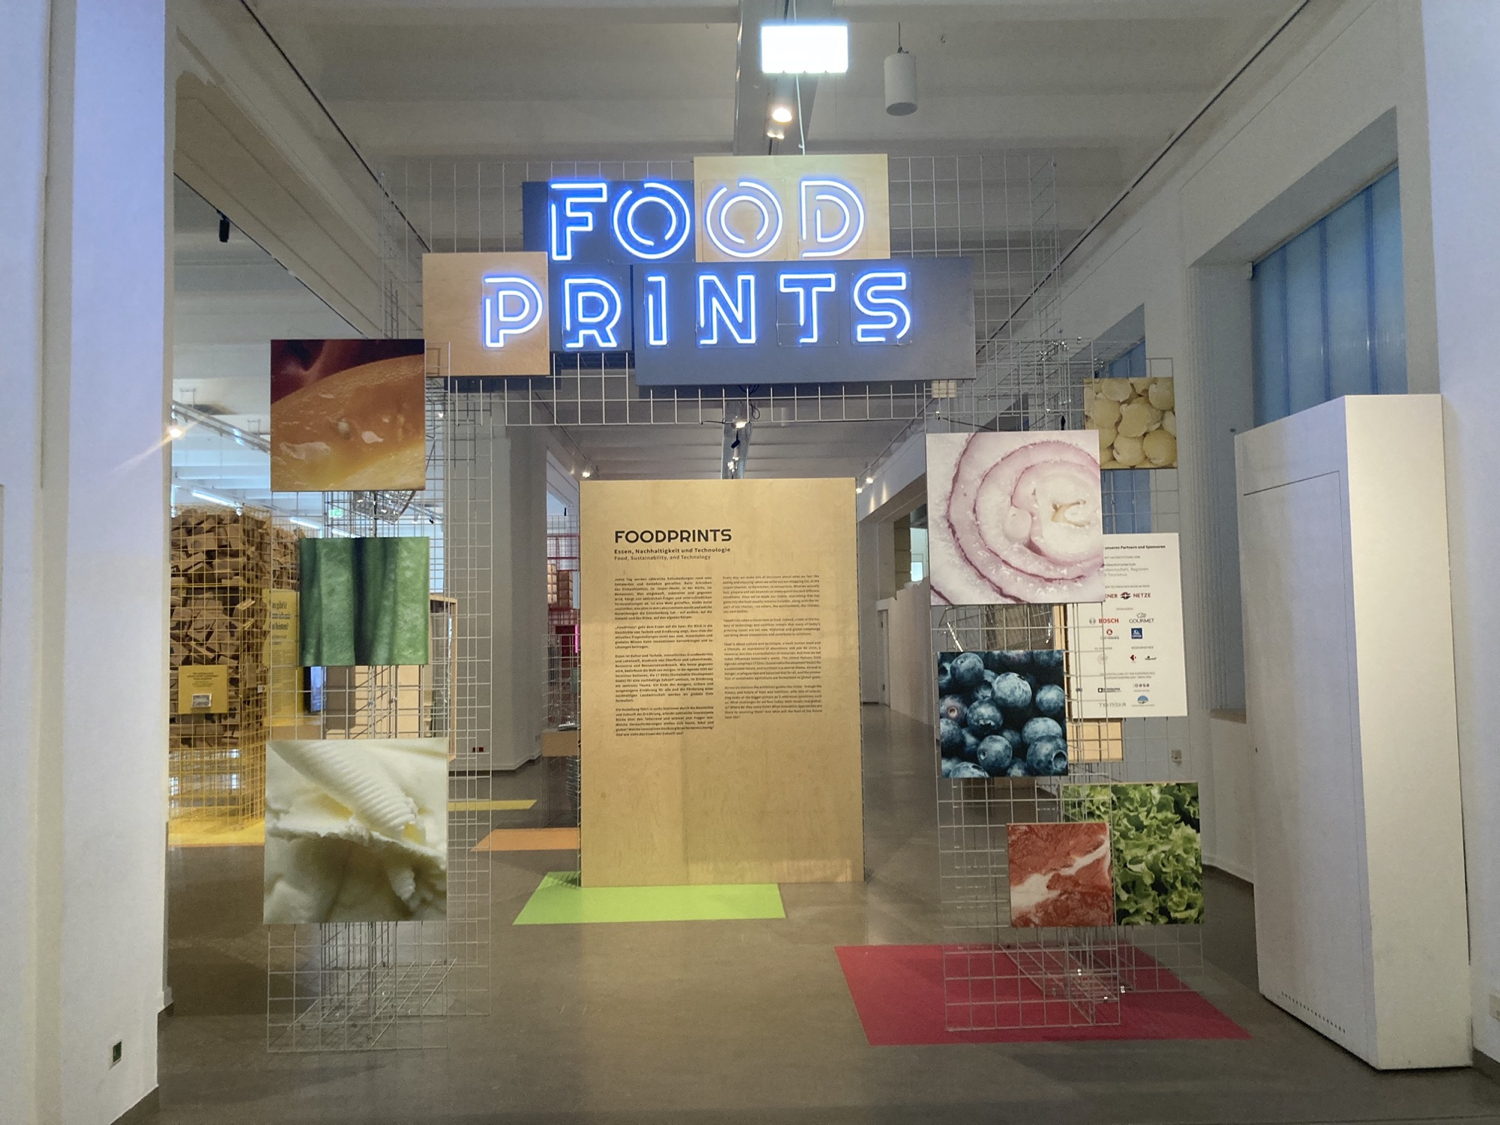 Eingangsbereich zur Ausstellung Foodprints, Schritzug Foodprints in Leuchtbuchstaben über einem aus Gitterboxen zusammengestellten Tor, das mit Detailaufnahmen von Nahrungsmitteln dekoriert ist